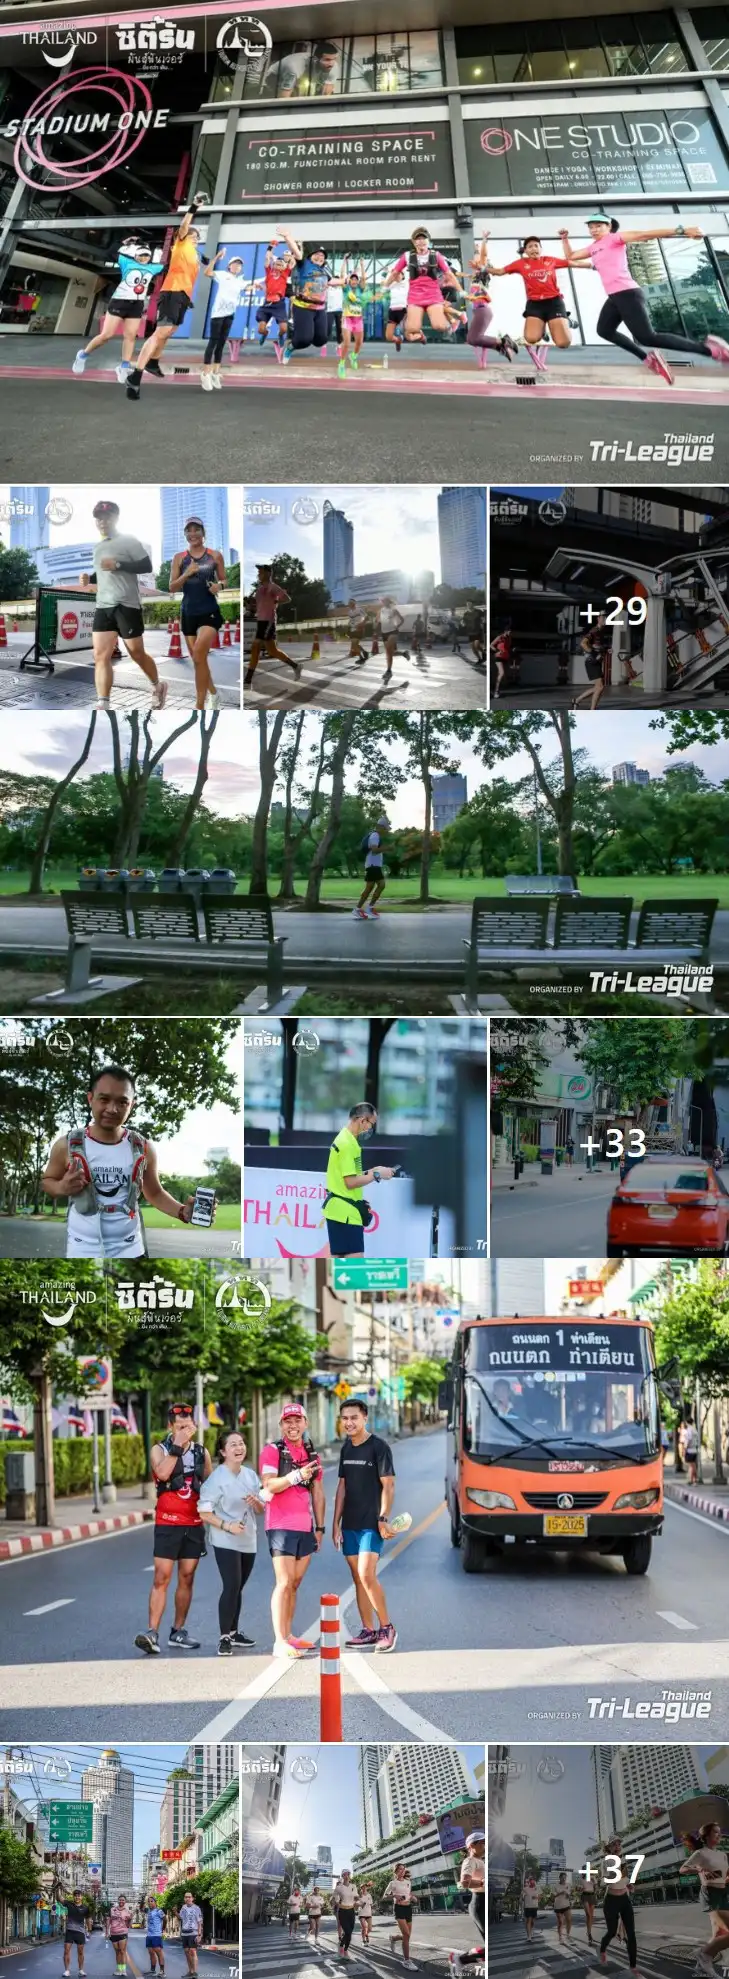 Amazing  Thailand ซิตี้รัน...มันส์ ฟัน เว่อร์...ยิ่งกว่าเดิม 19 มิ.ย.65 [Finished] งานวิ่งในไทยที่จัดและจบไปแล้วในรอบปี 2565